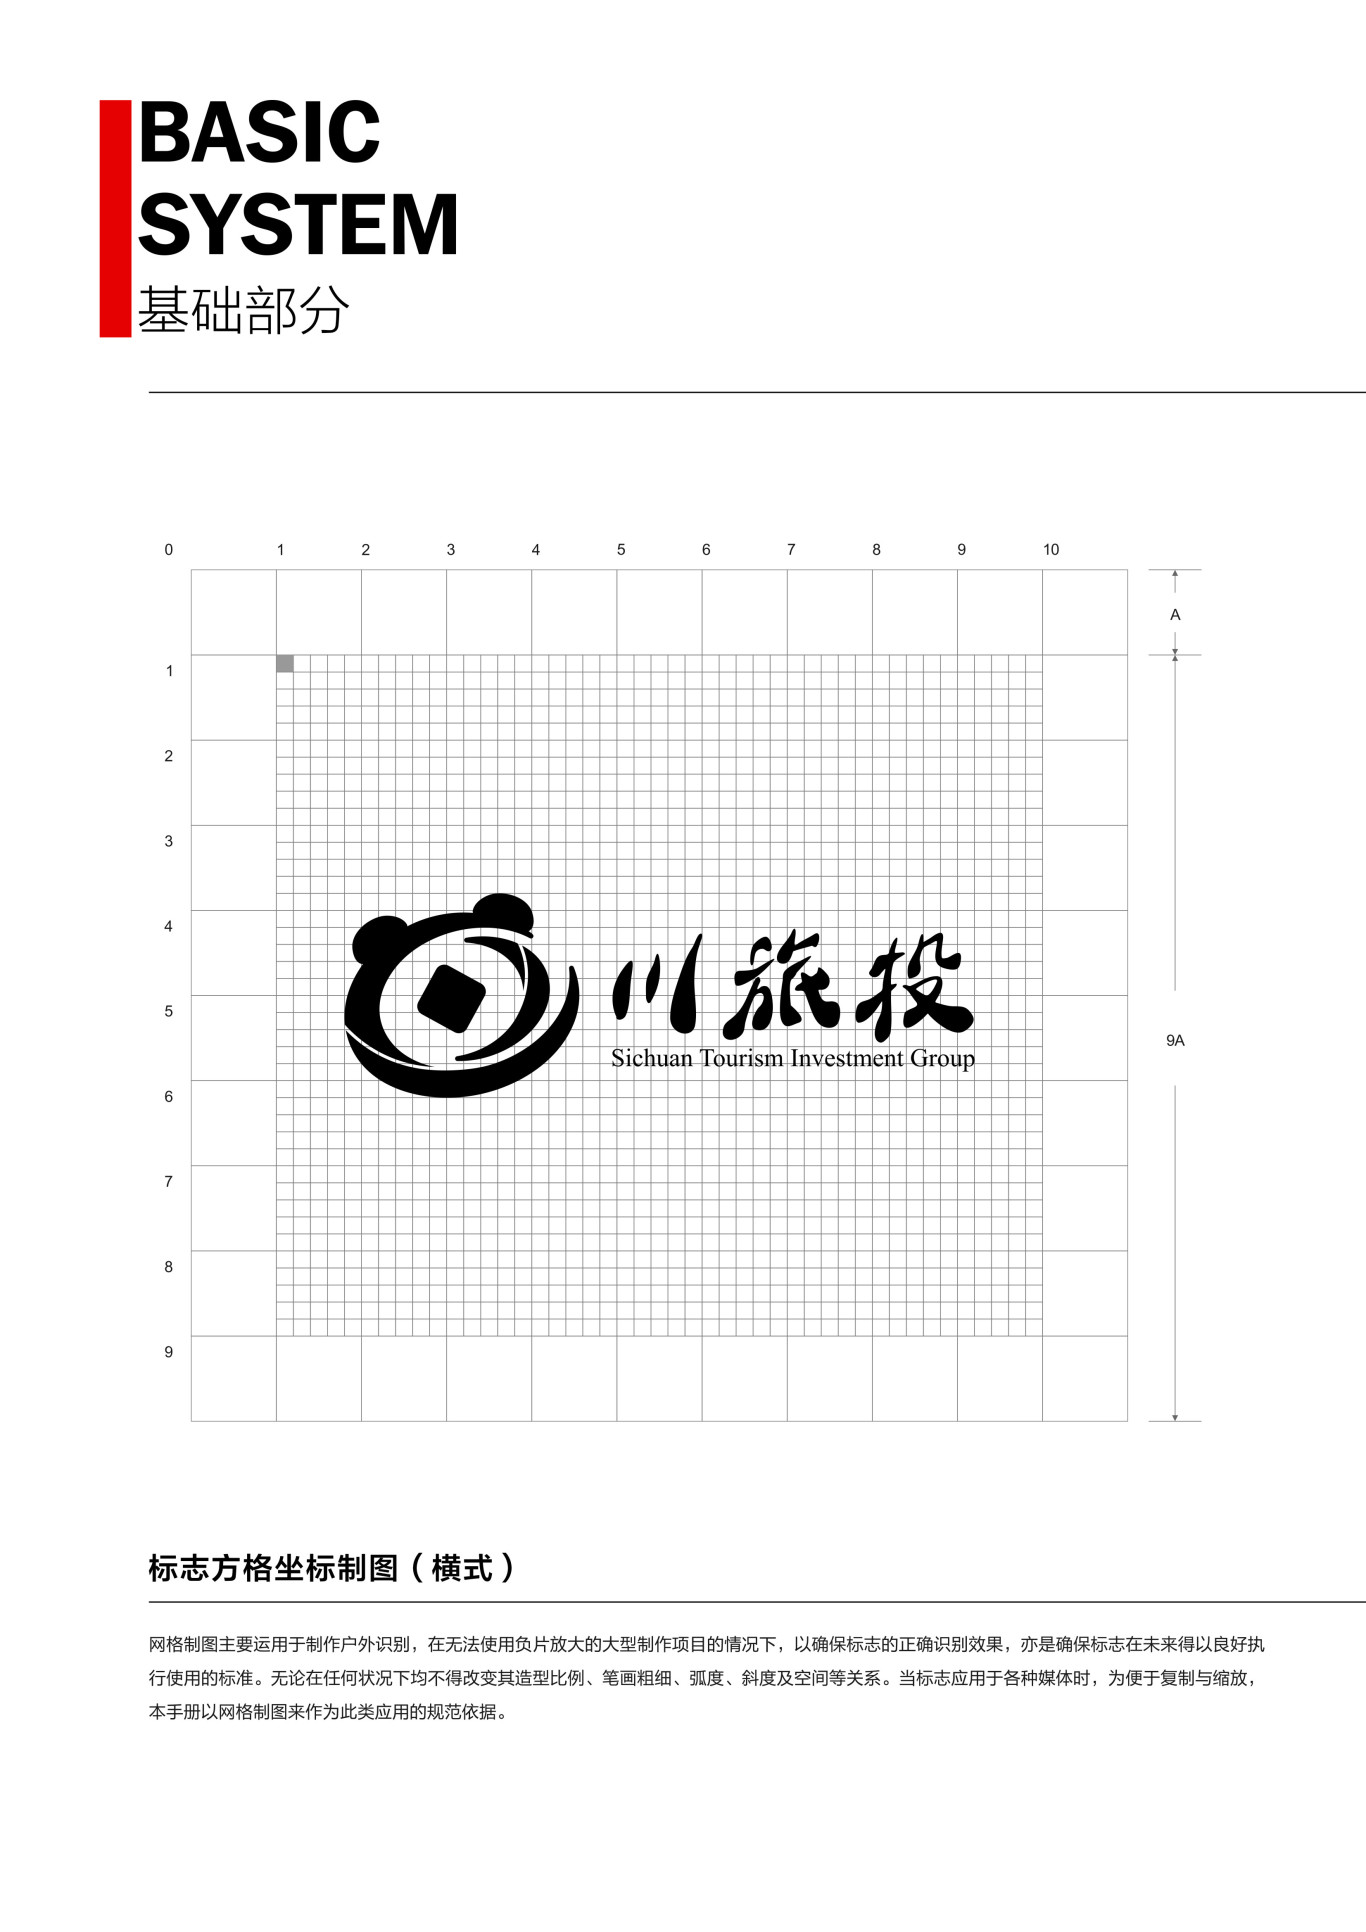 四川省旅游投资集团企业形象识别系统图2